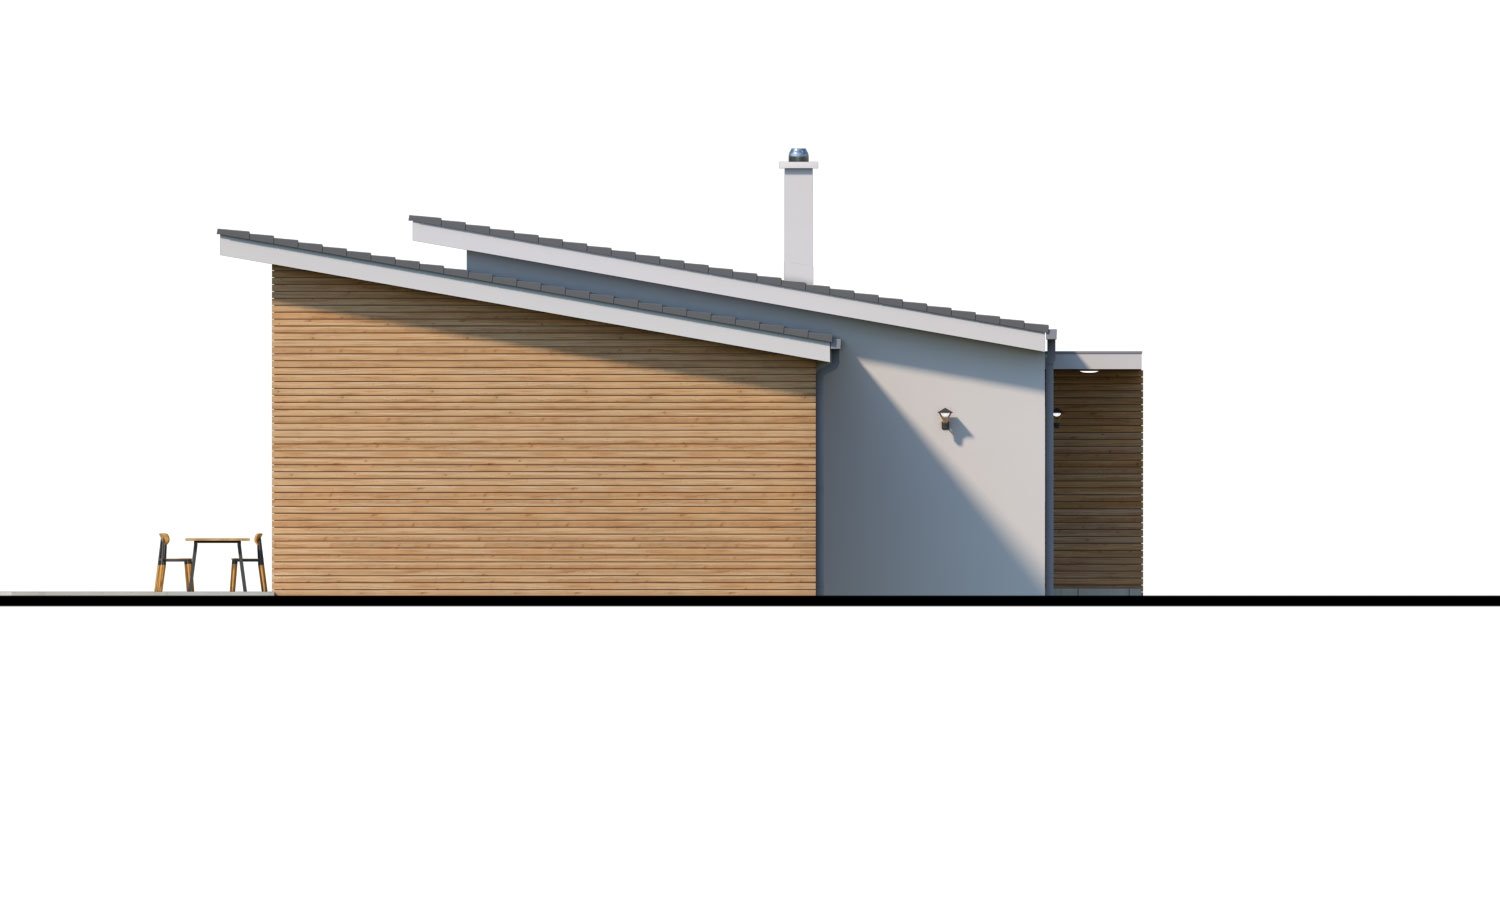 Moderný malý murovaný rodinný dom s garážou, pultovou strechou. Možná realizácia s dvojgarážou, alebo bez garáže. Vhodný aj ako dvojdom, alebo do radovej zástavby.